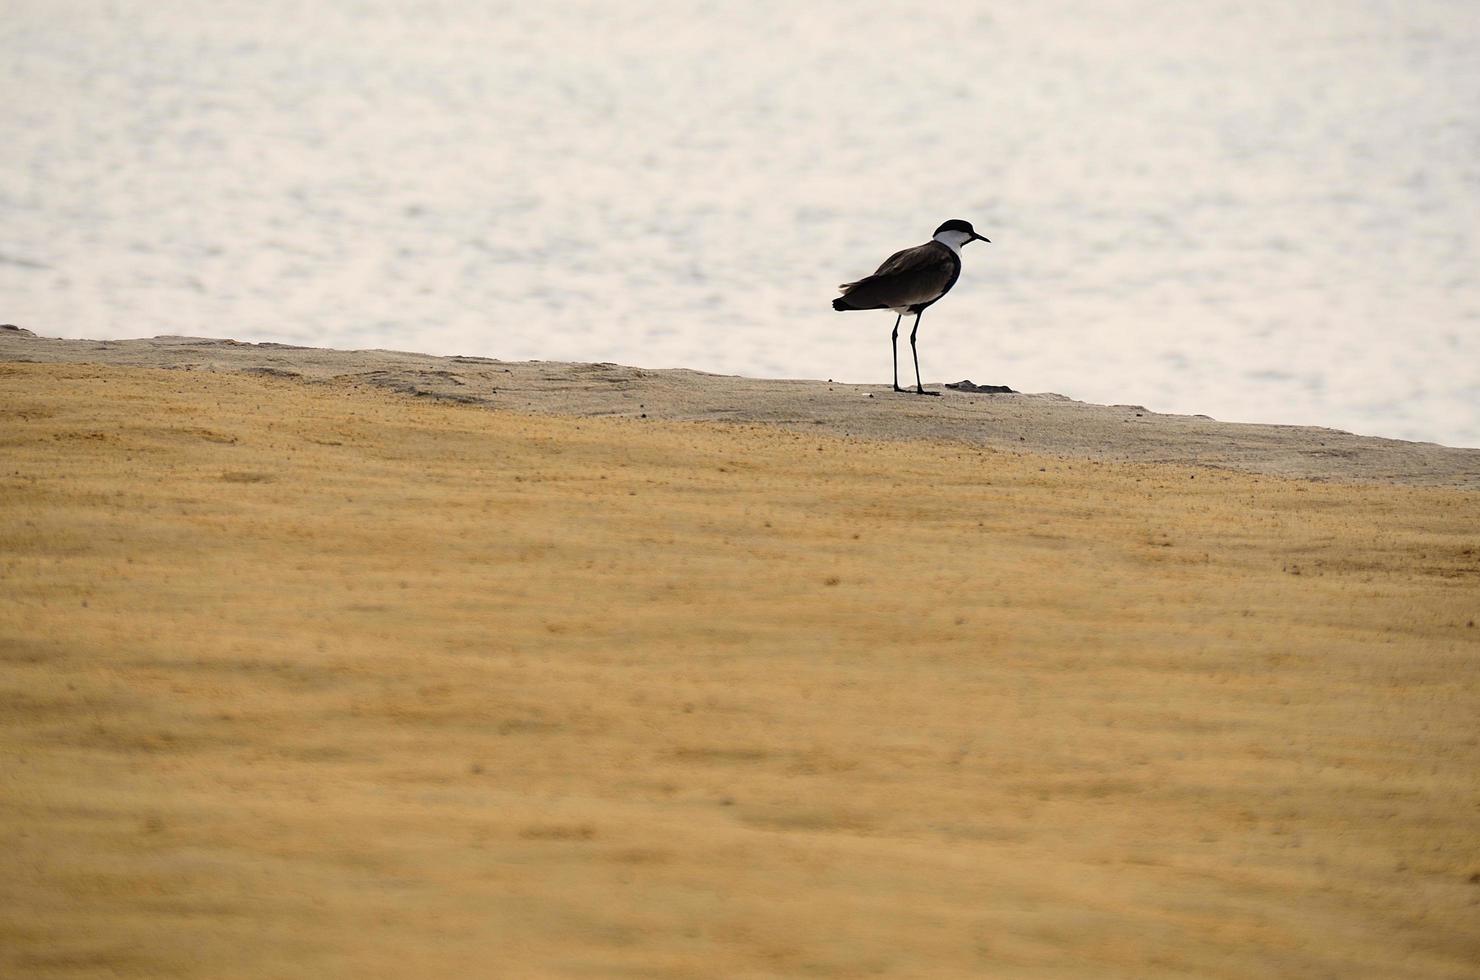 oiseau sur la plage de sable photo